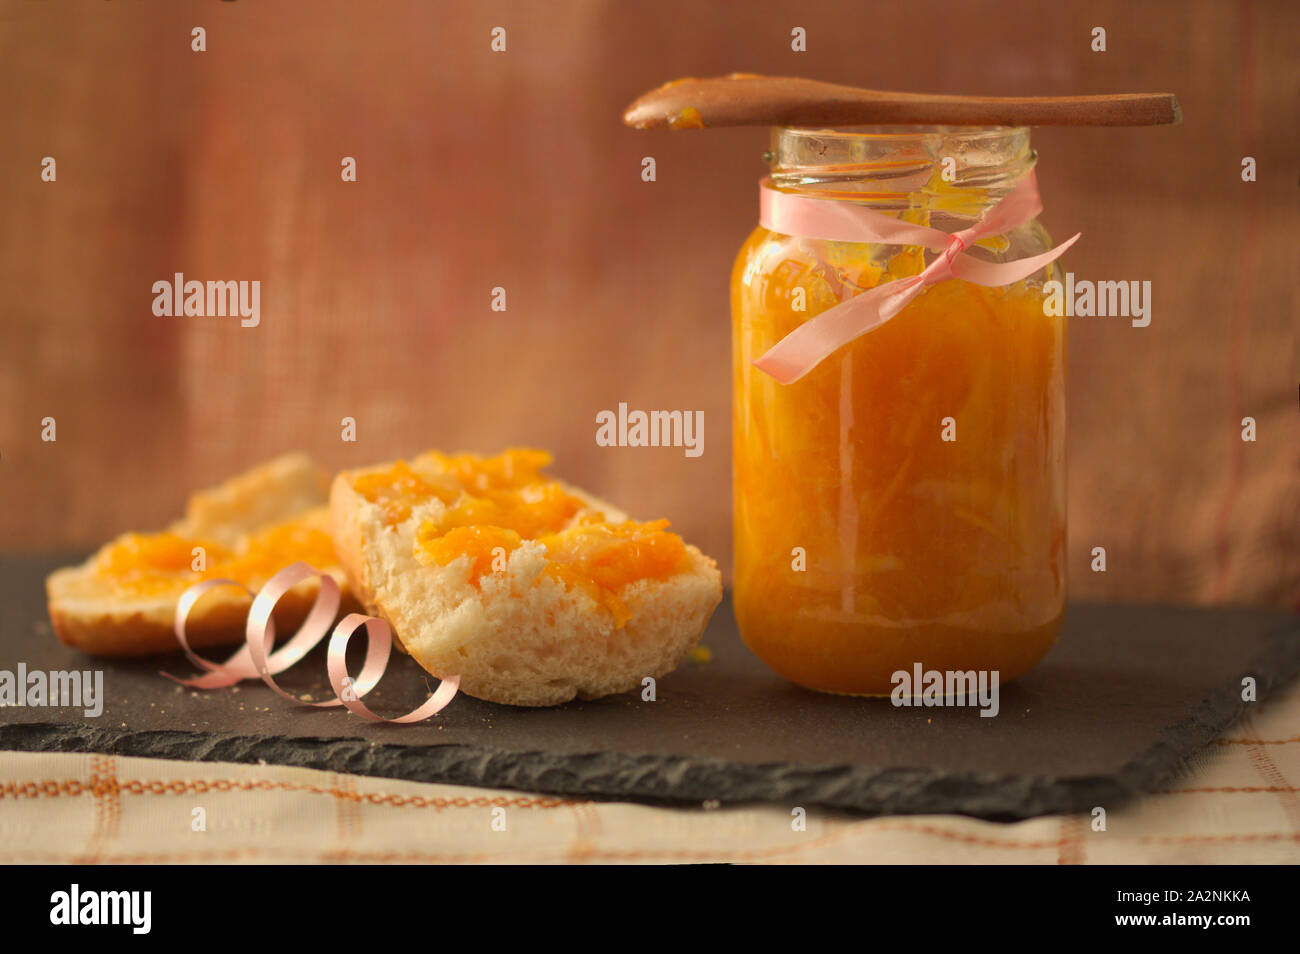 Vaso in casa di marmellata di arance con un pezzo di pane con la marmellata e uno sfondo marrone per far corrispondere la marmellata e lo spazio per i testi. Spazio di copia Foto Stock